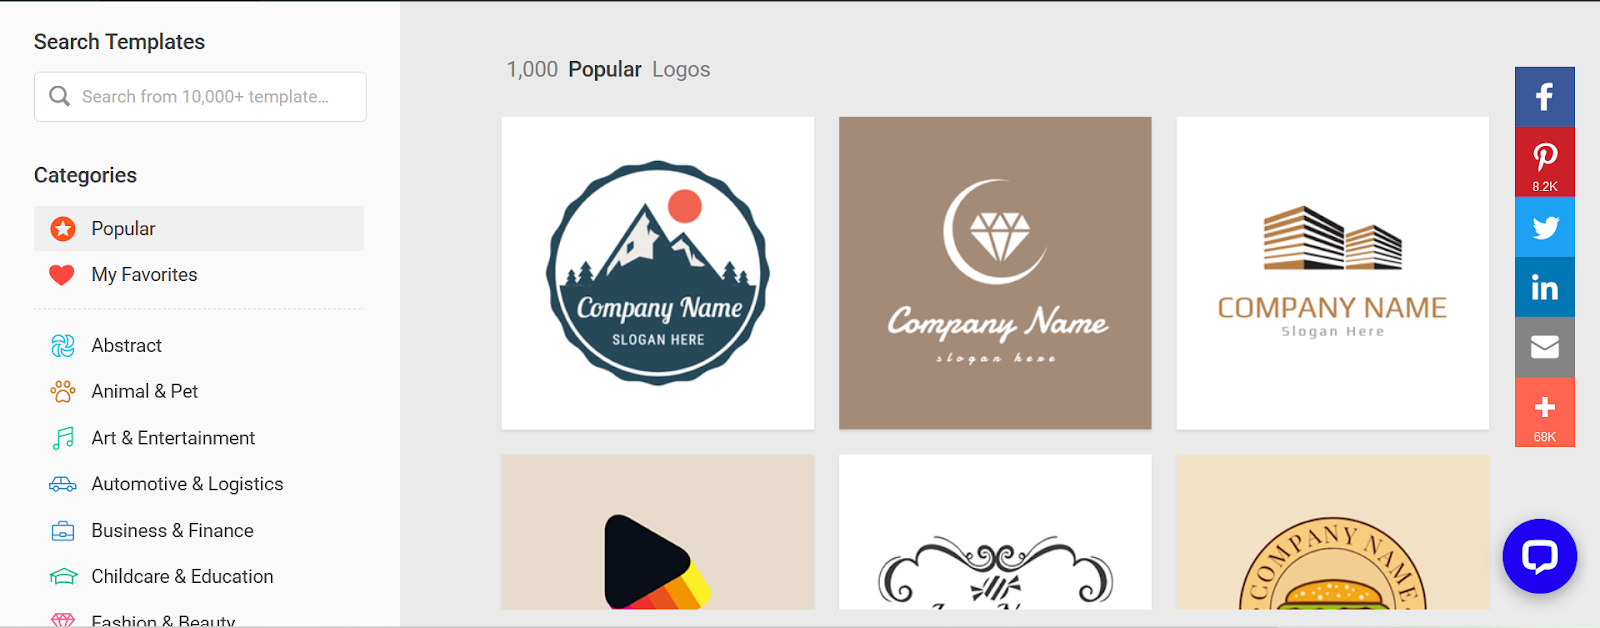 membuat logo online gratis dengan designevo